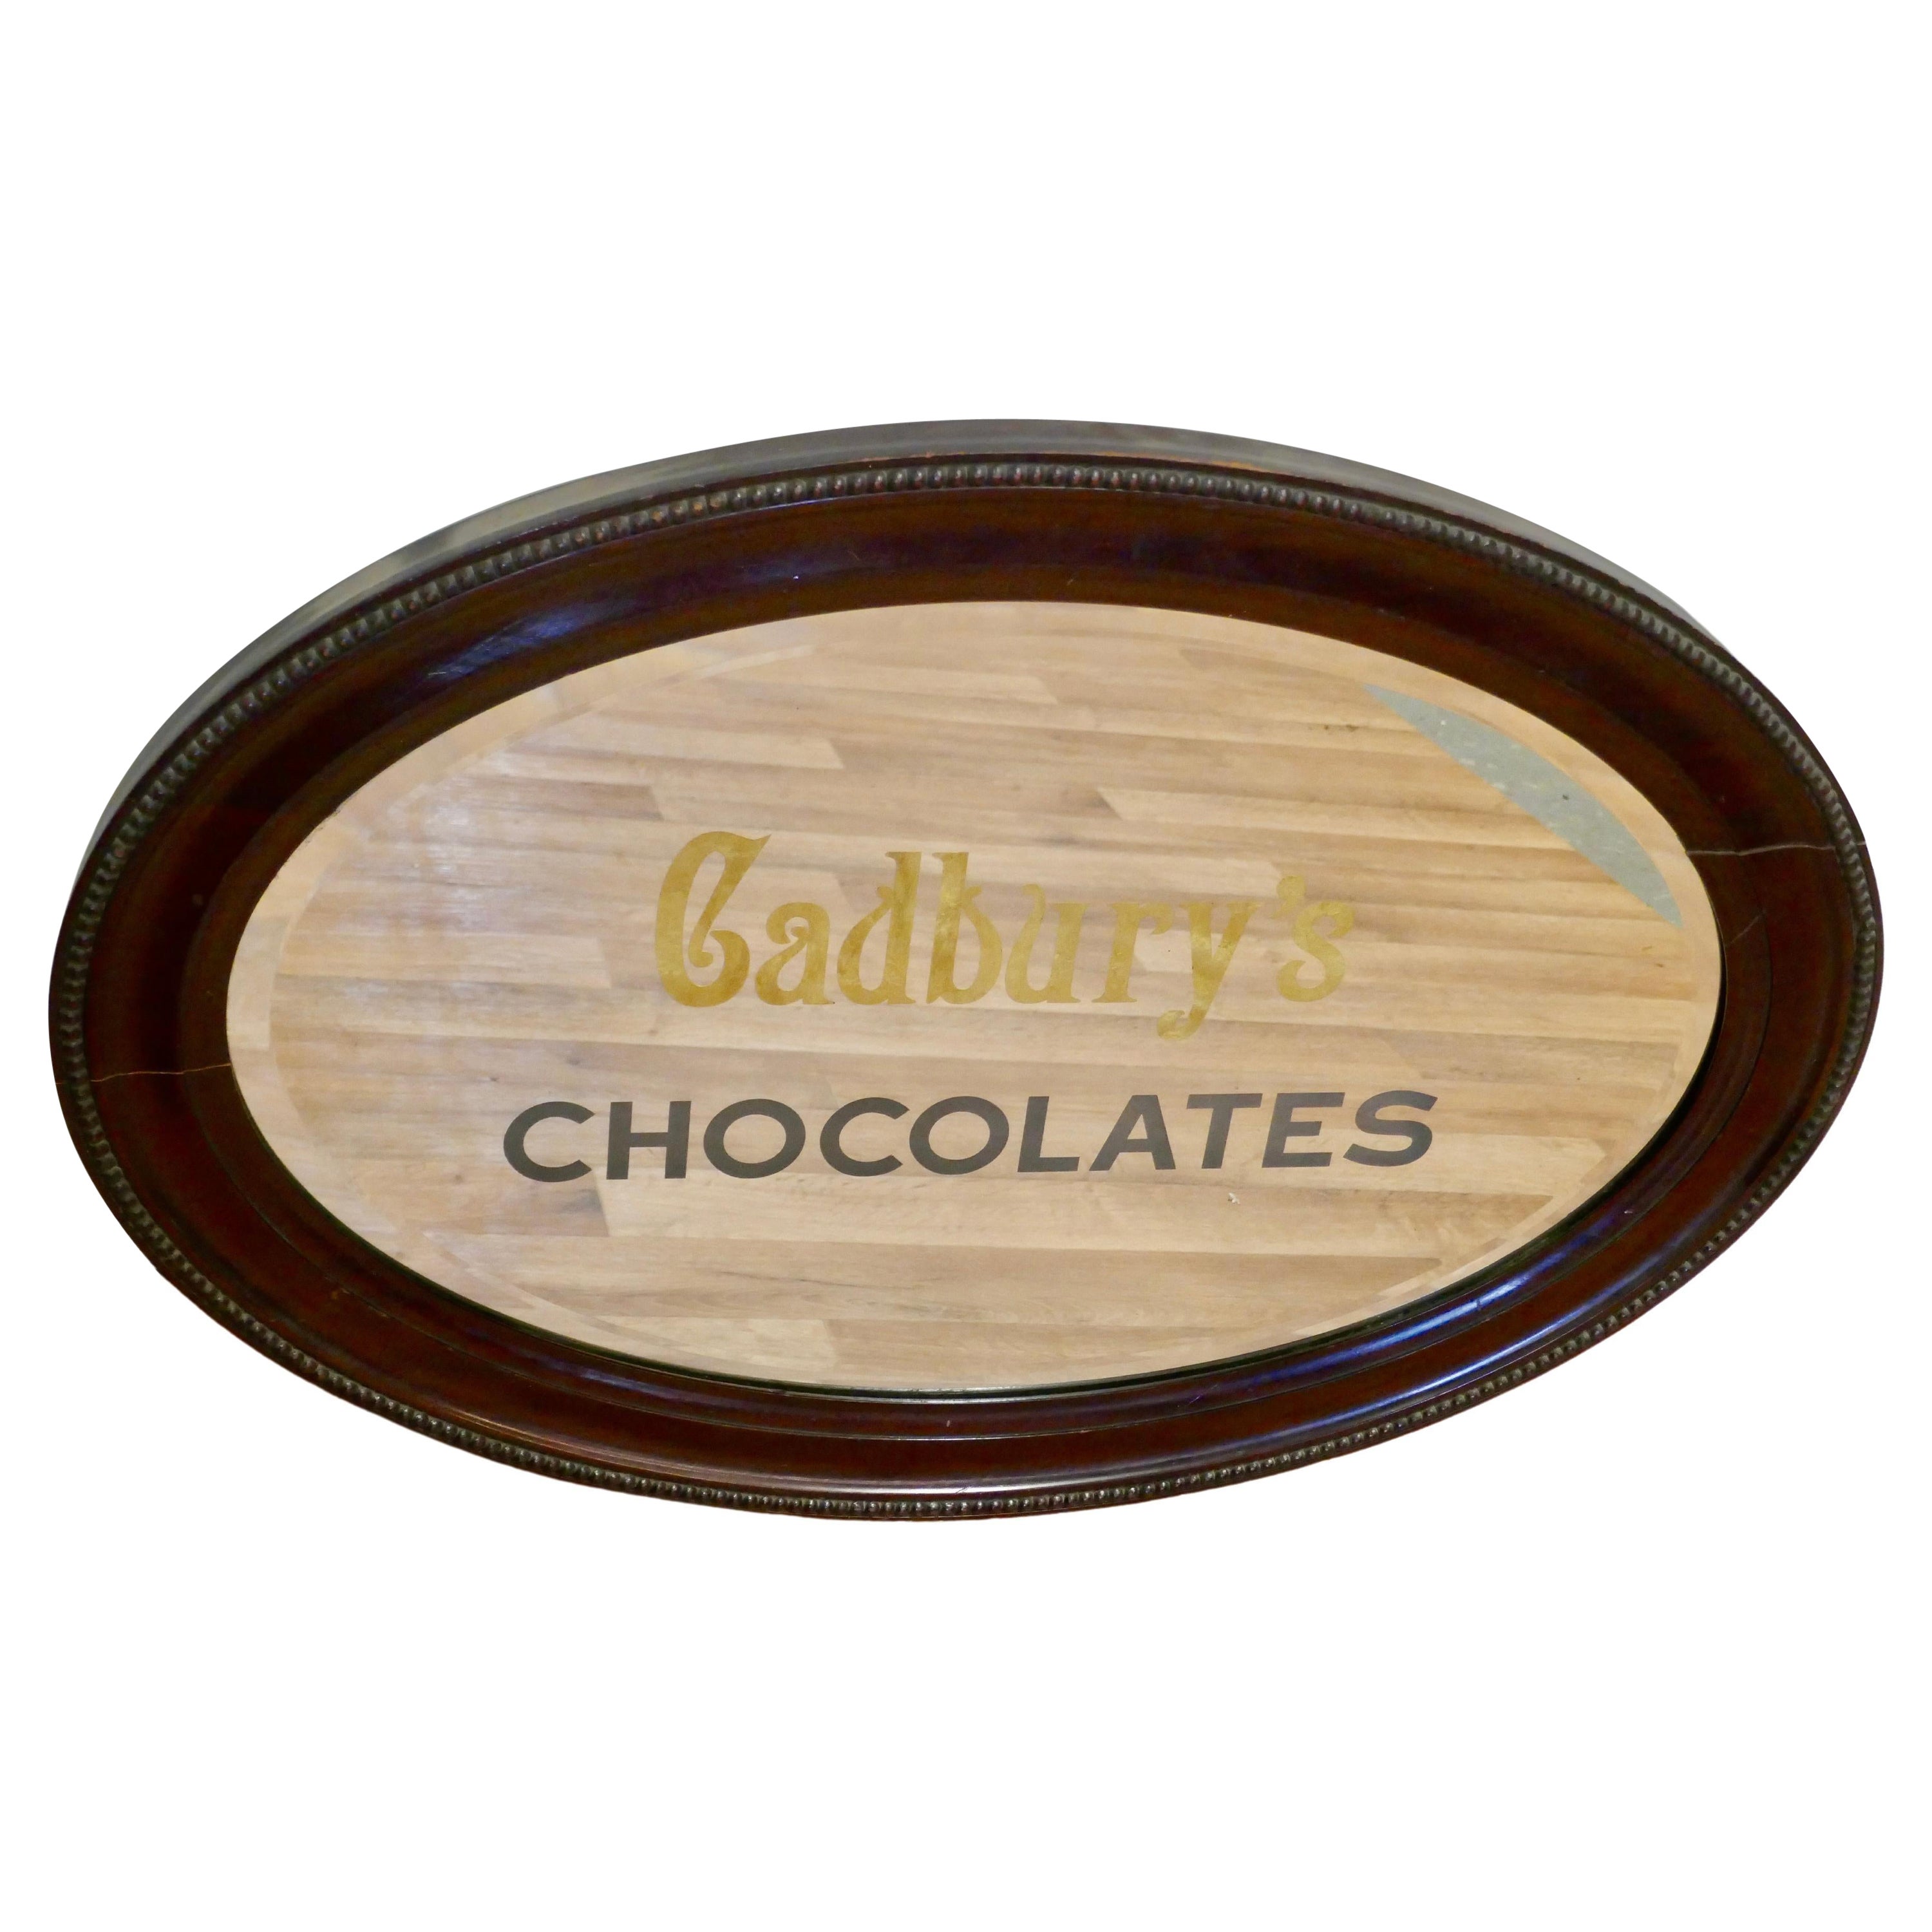 Miroir publicitaire édouardien Cadburys Chocolates